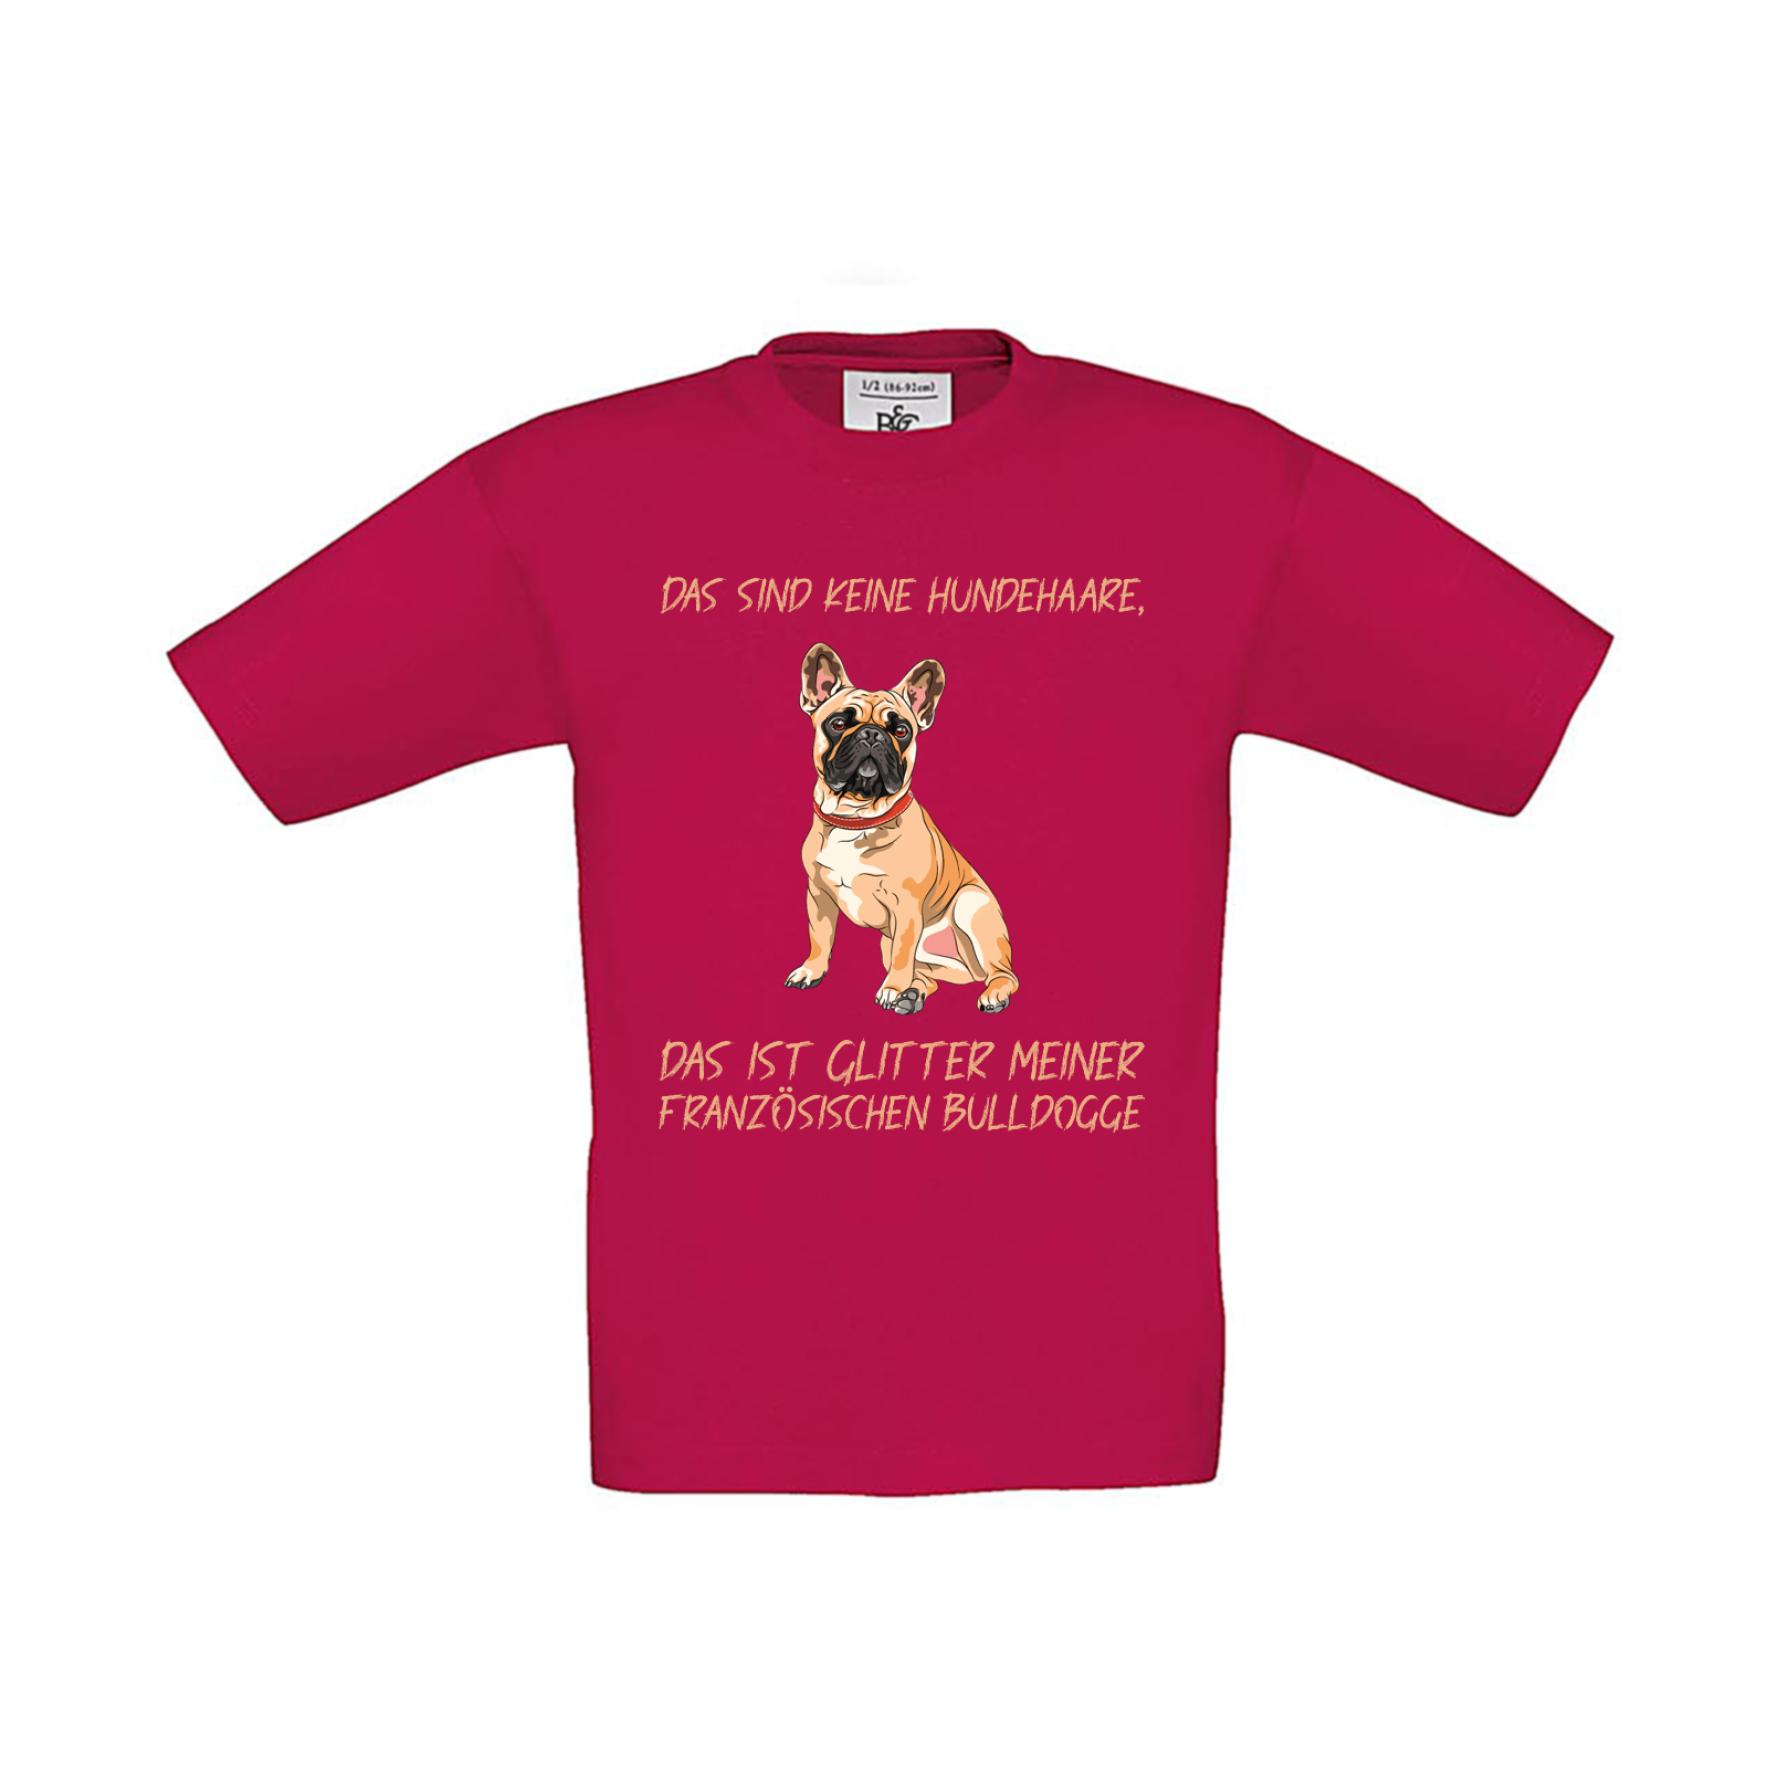 T-Shirt Kinder Hunde - Französische Bulldogge - keine Hundehaare - Glitter